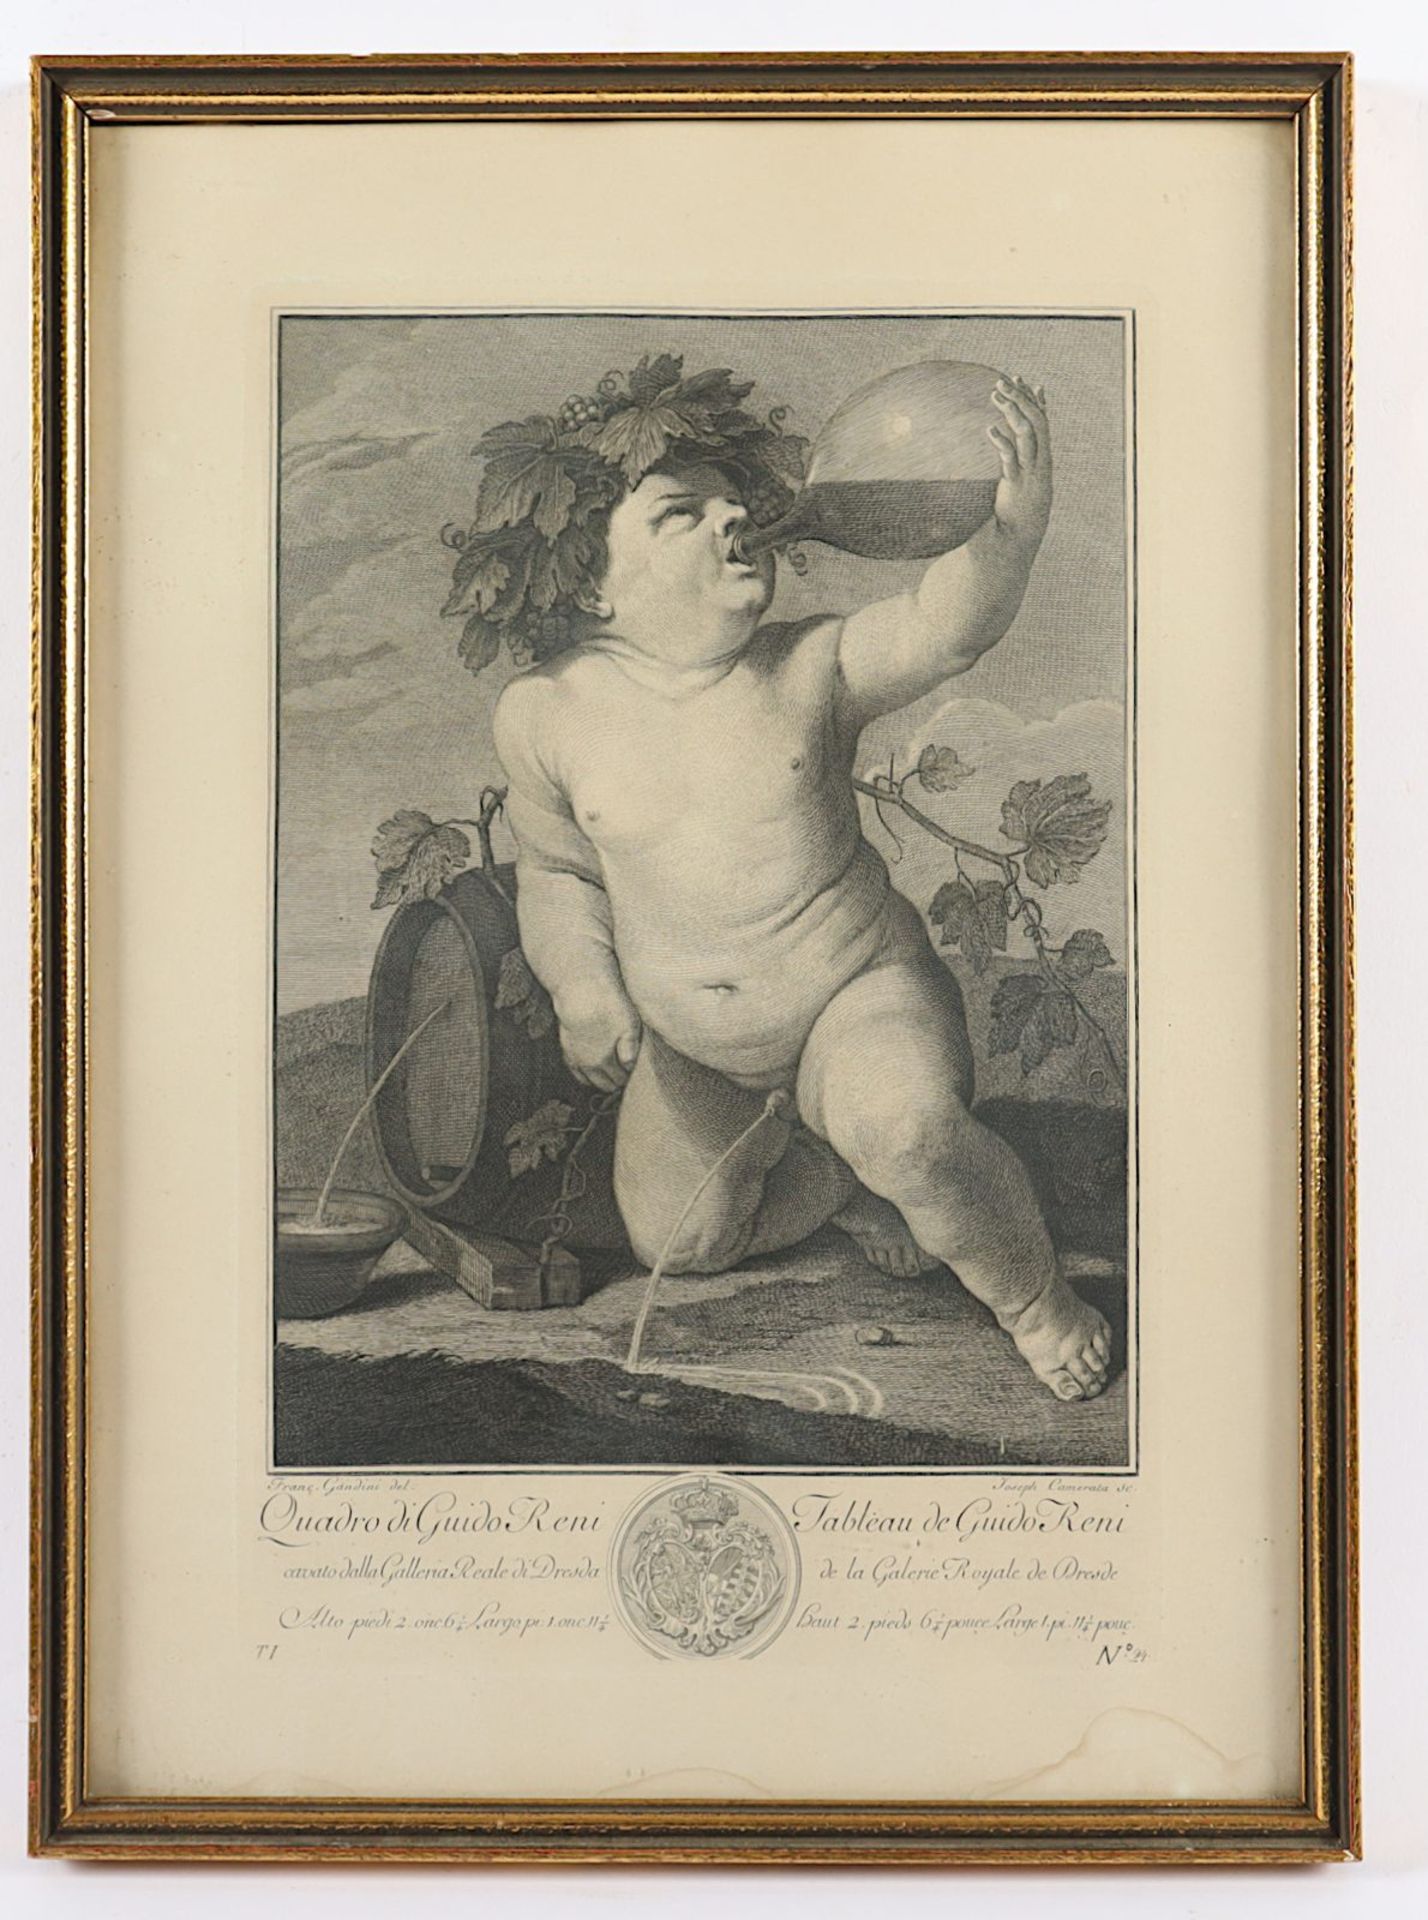 Guiseppe Camerata (1718-1803), "Der kleine Bacchus", nach Guido Reni, Kupferstich, R.